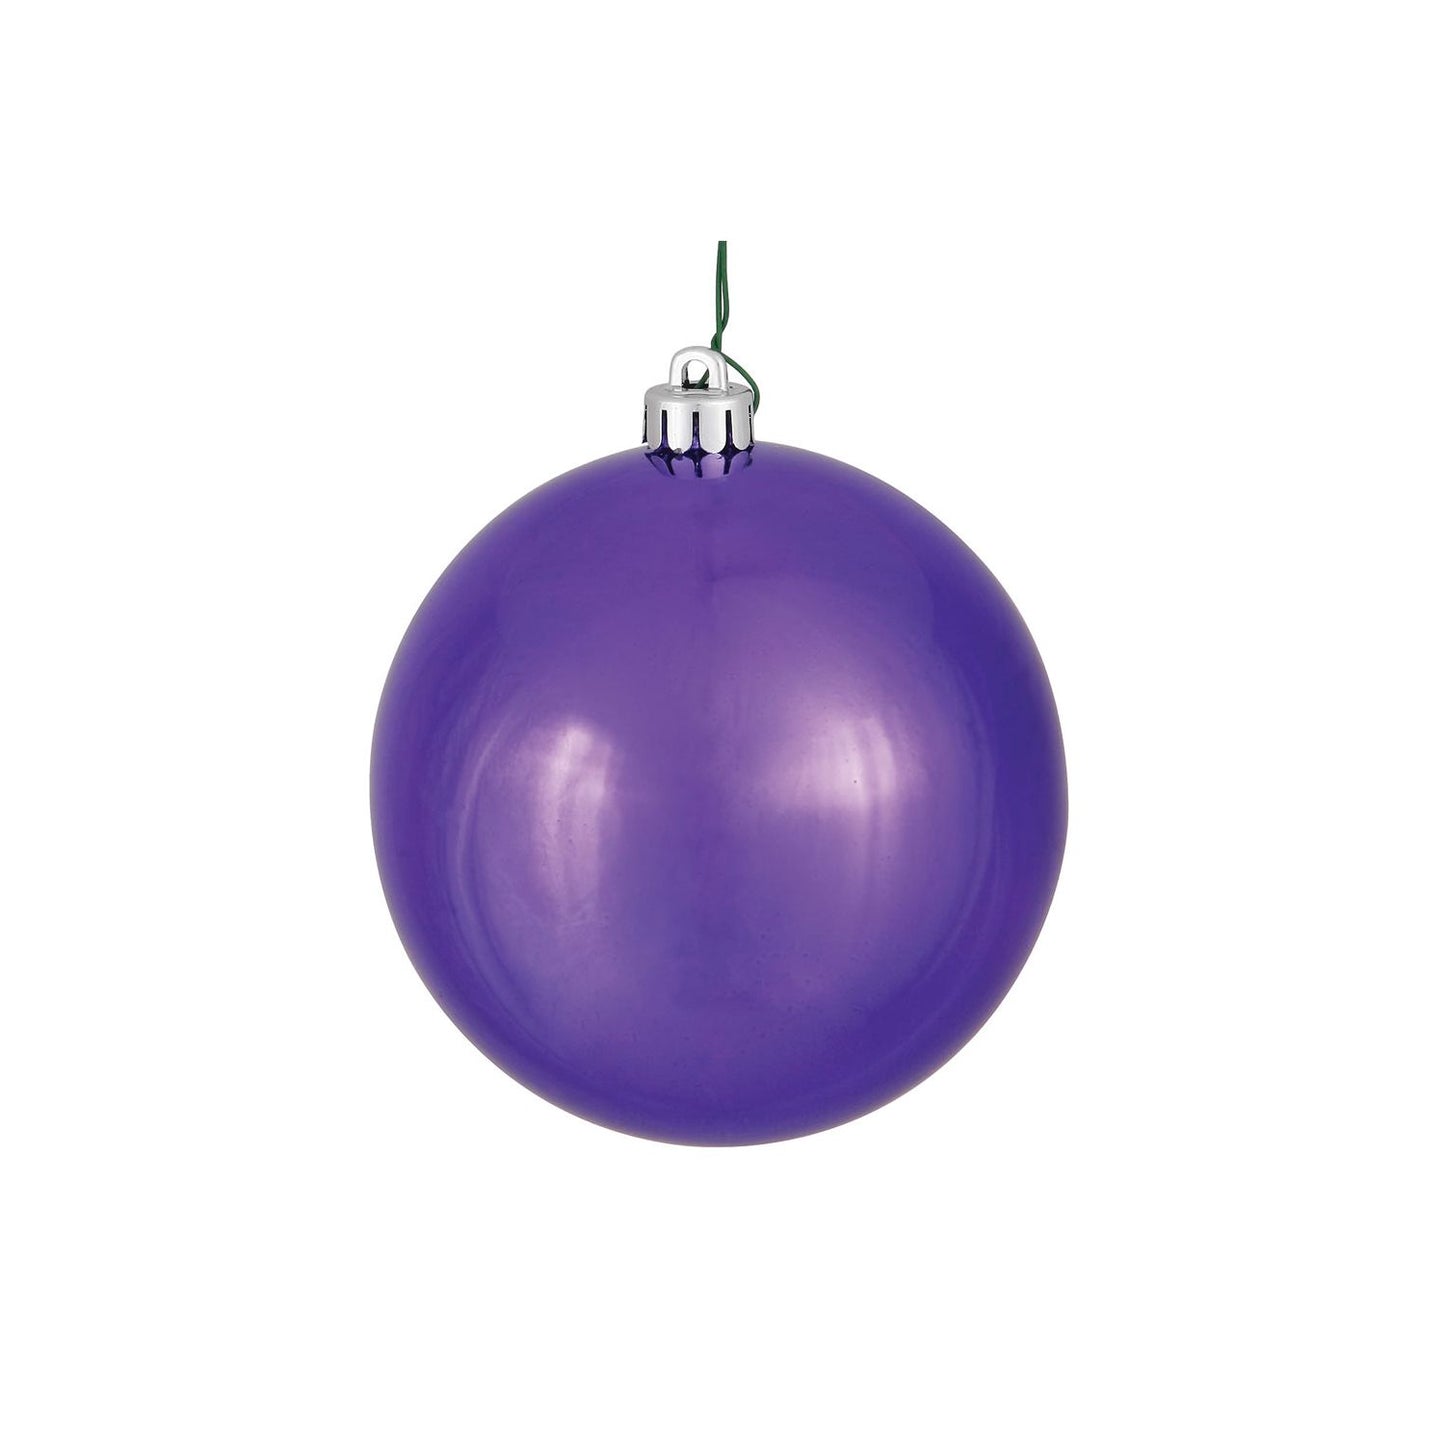 Vickerman 12" Shiny Ball Ornament